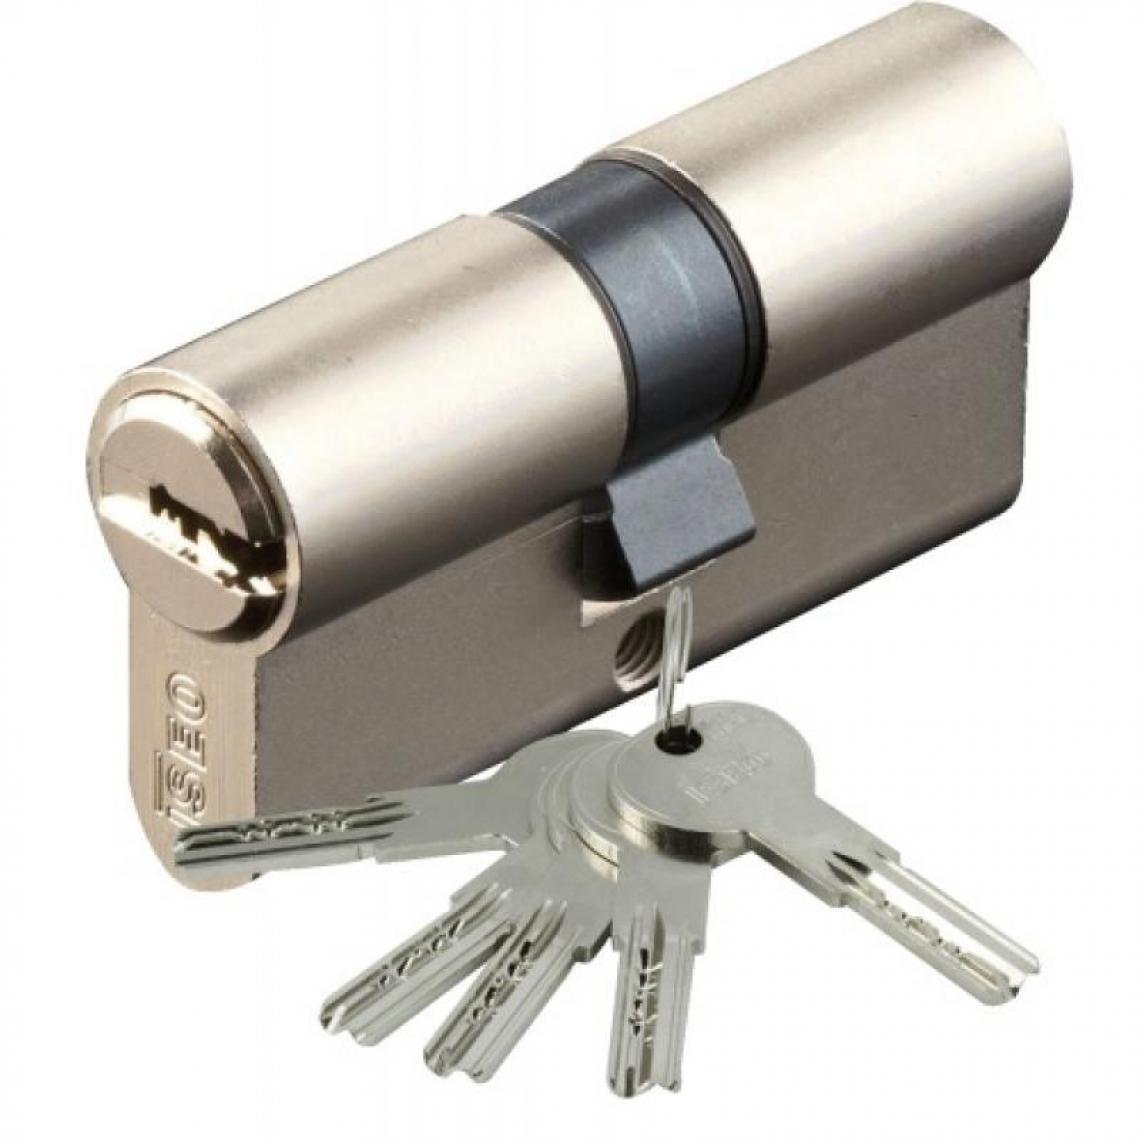 Iseo City - Cylindre type ISR6 sur numéro suivi AGL 697 laiton nickelé 3 clés 35 x 45 - Cylindre de porte